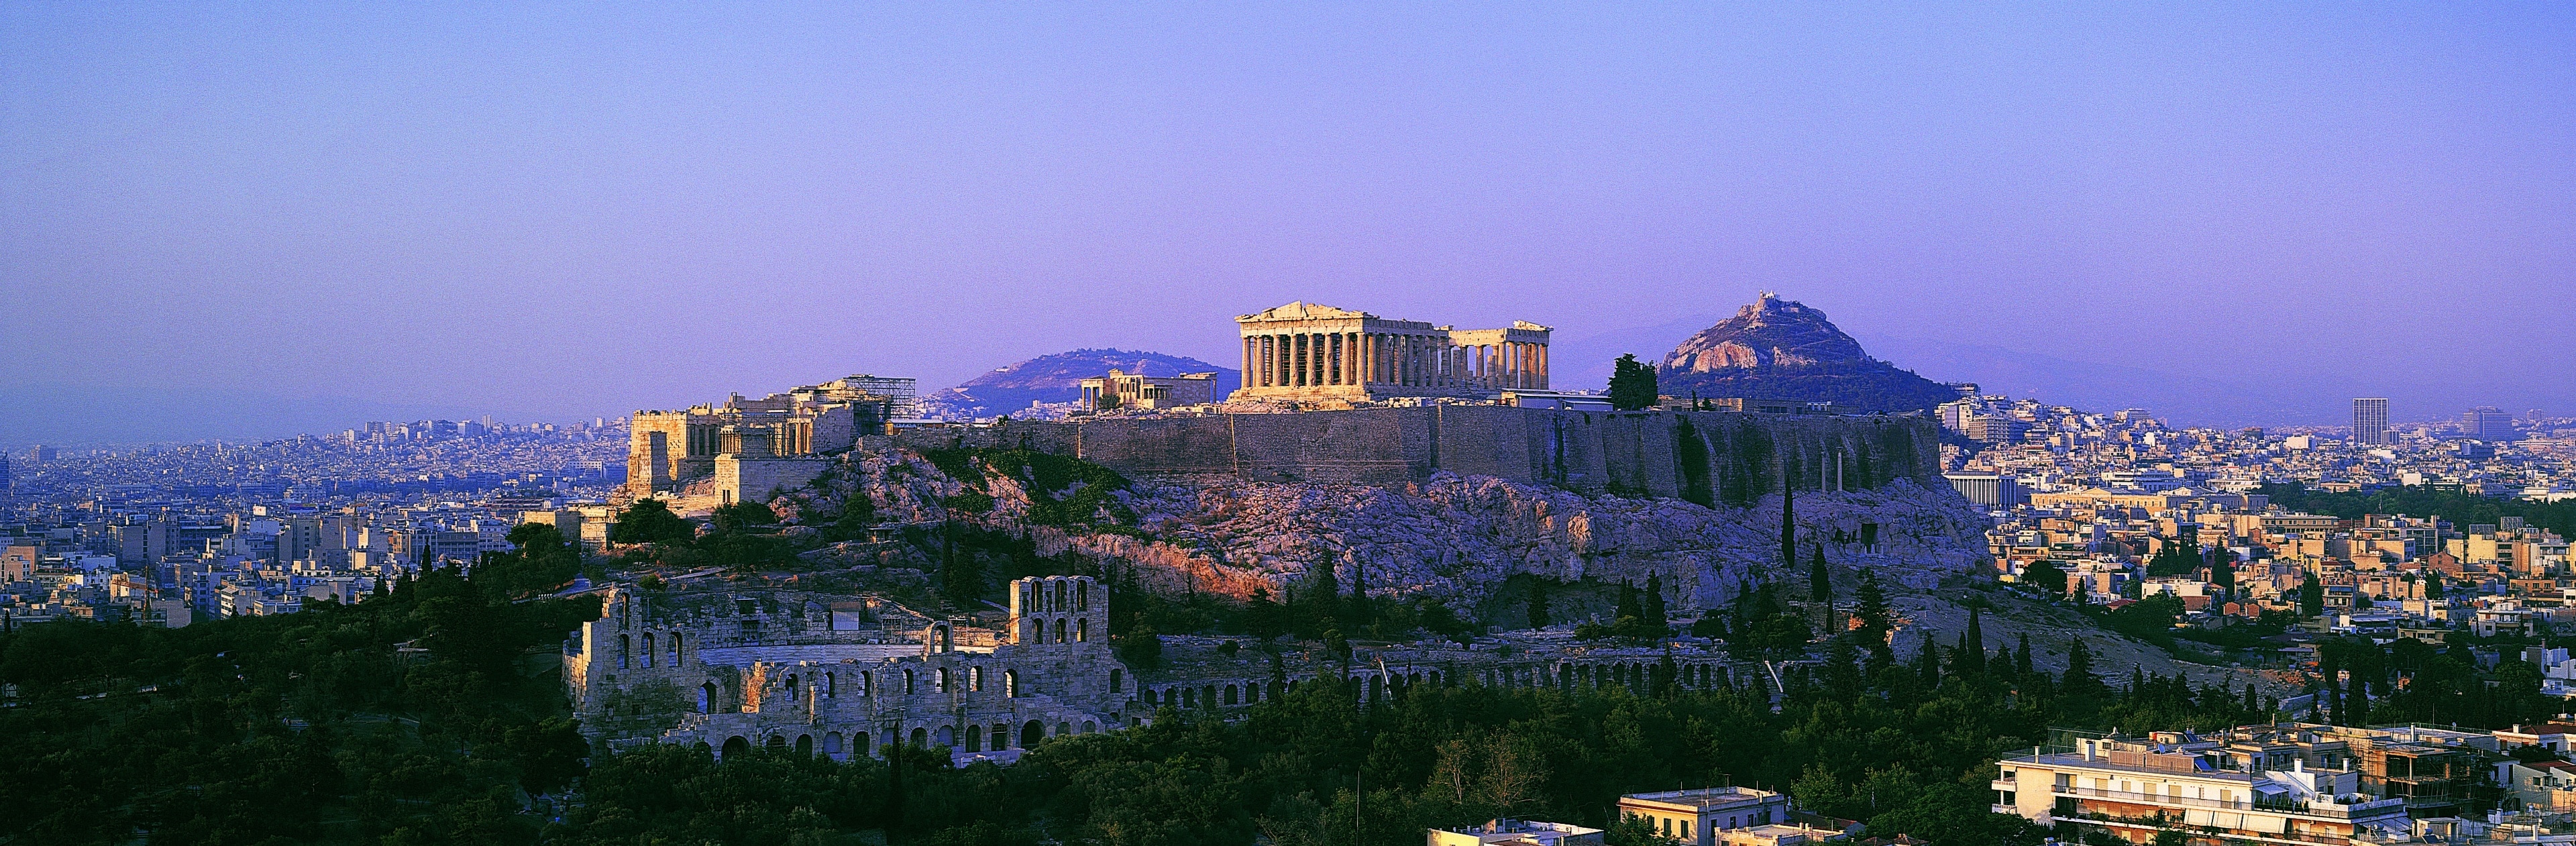 Parthenon er det største doriske tempel i Grækenland, og det blev bygget til ære for krigsgudinden Athene. Når man går rundt mellem ruinerne og kigger på reliefferne, der illustrerer klassiske myter, føler man sig nærmest hensat til oldtiden.